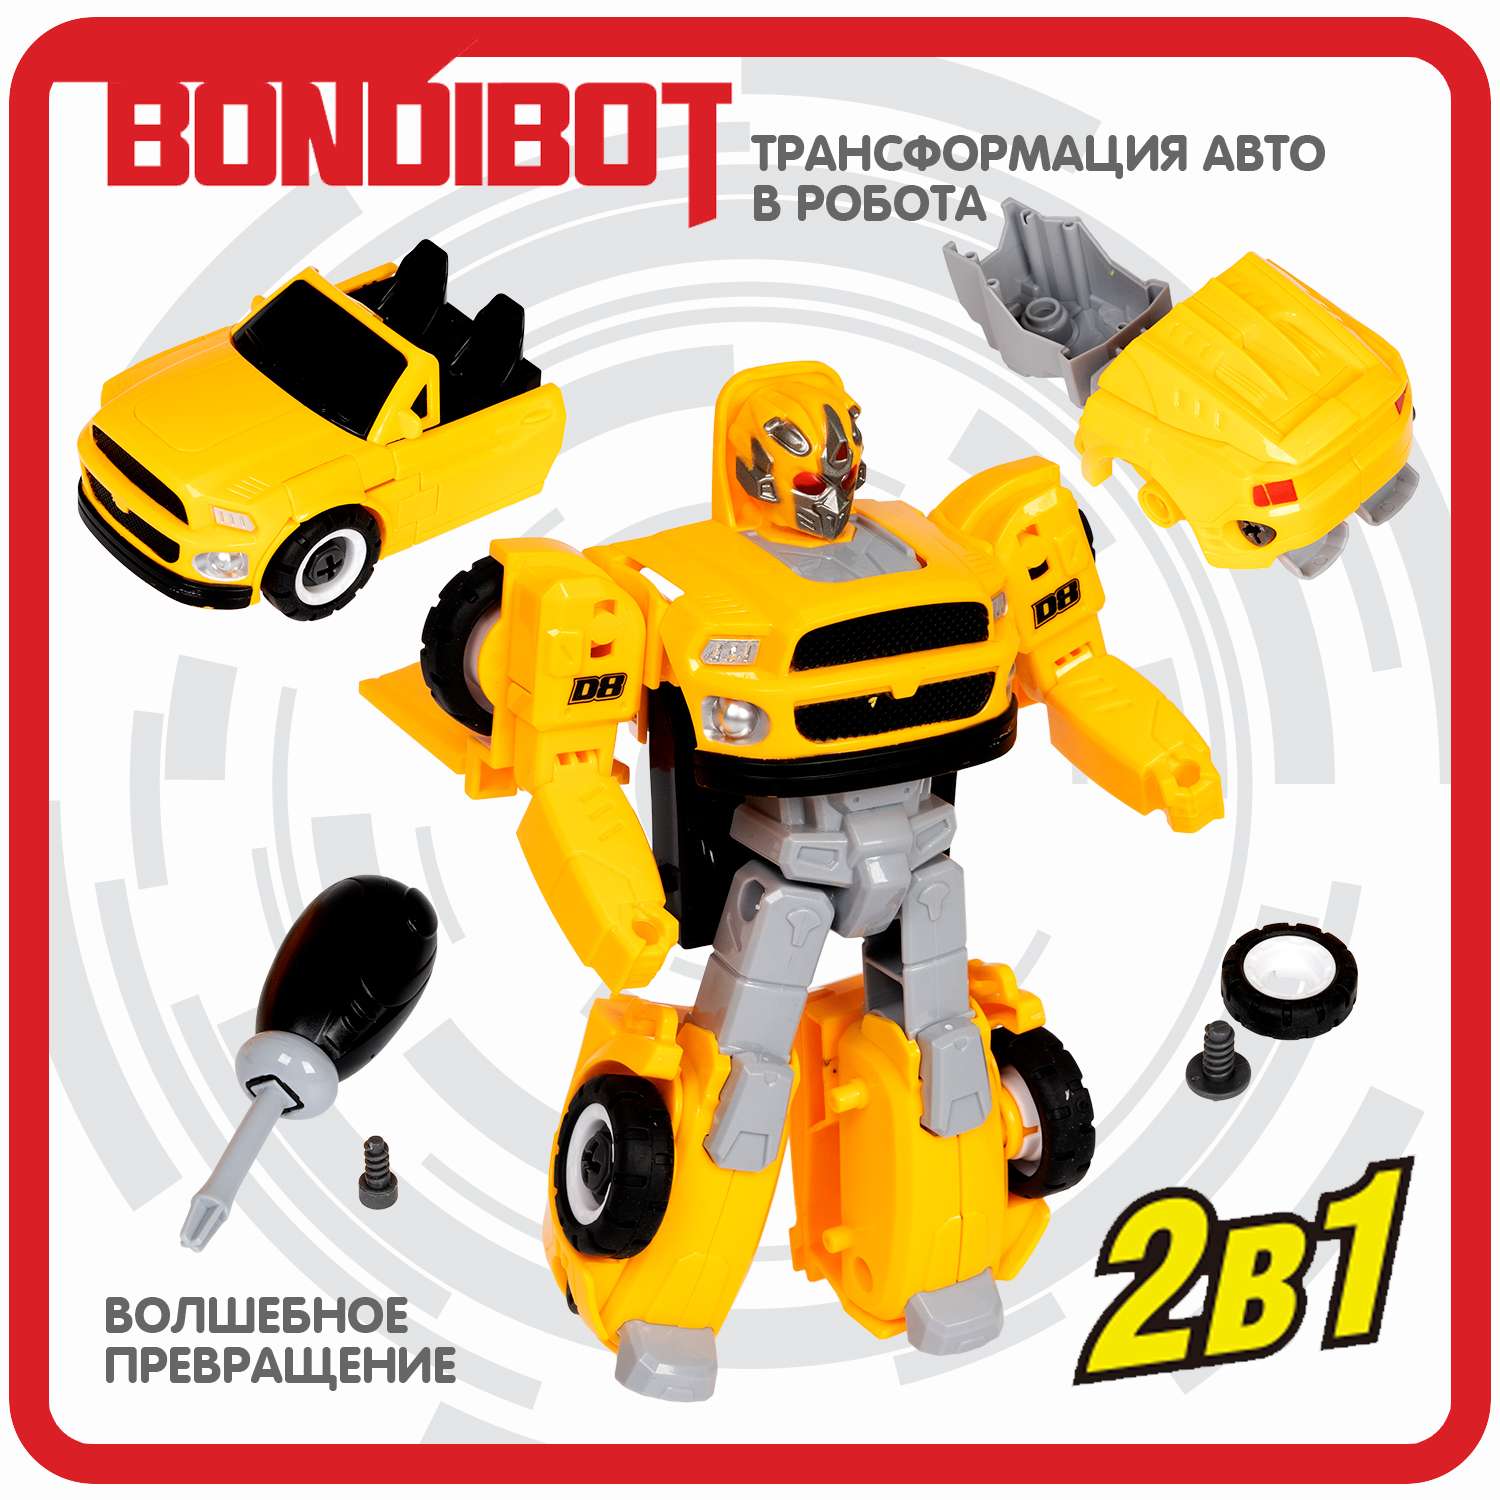 Трансформер BONDIBON Bondibot Робот-автомобиль кабриолет с отвёрткой 2 в 1 жёлтого цвета - фото 4